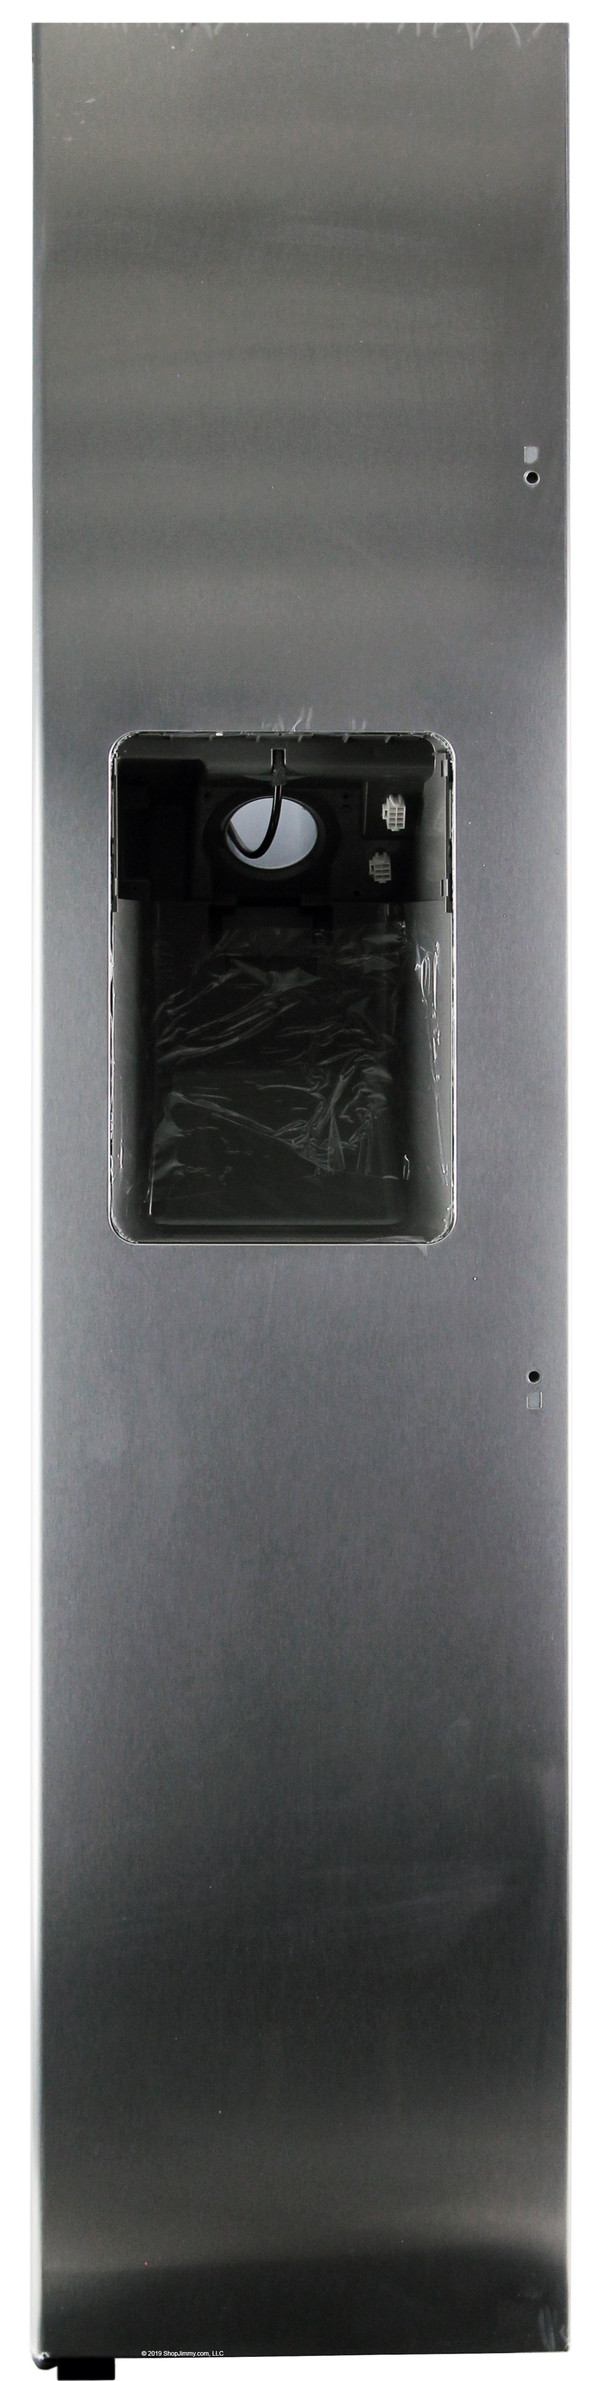 Samsung Refrigerator DA82-02520B Door Assembly